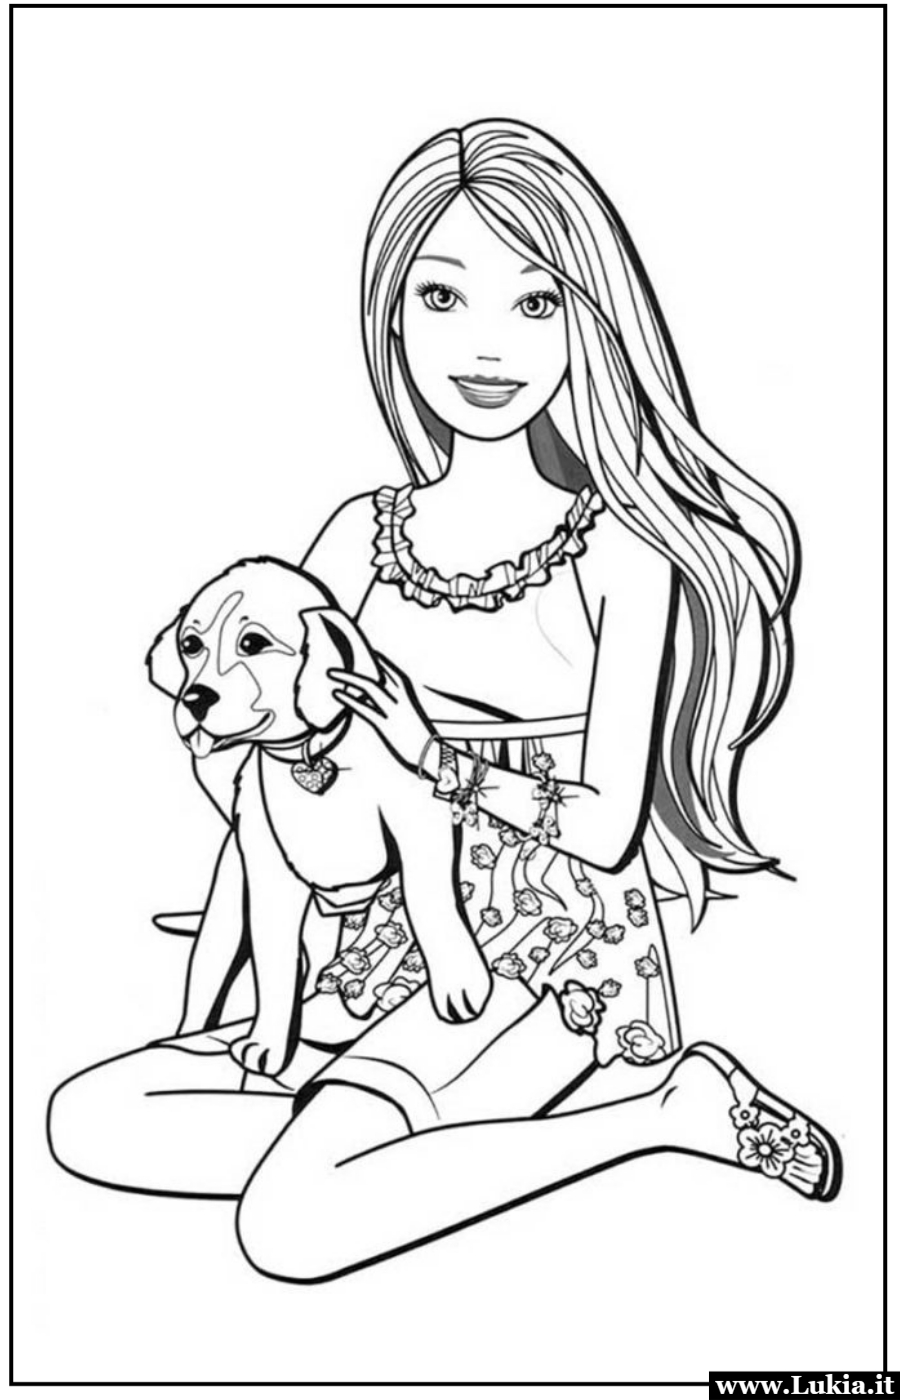 Barbie e il suo cucciolo: un disegno da colorare e  per i piccoli amanti degli animali Divertitevi con il disegno da colorare gratis di Barbie e il suo cucciolo di cane! Un'adorabile scena di gioco e amore per gli animali da rendere viva con i vostri colori preferiti. - Immagini gratis